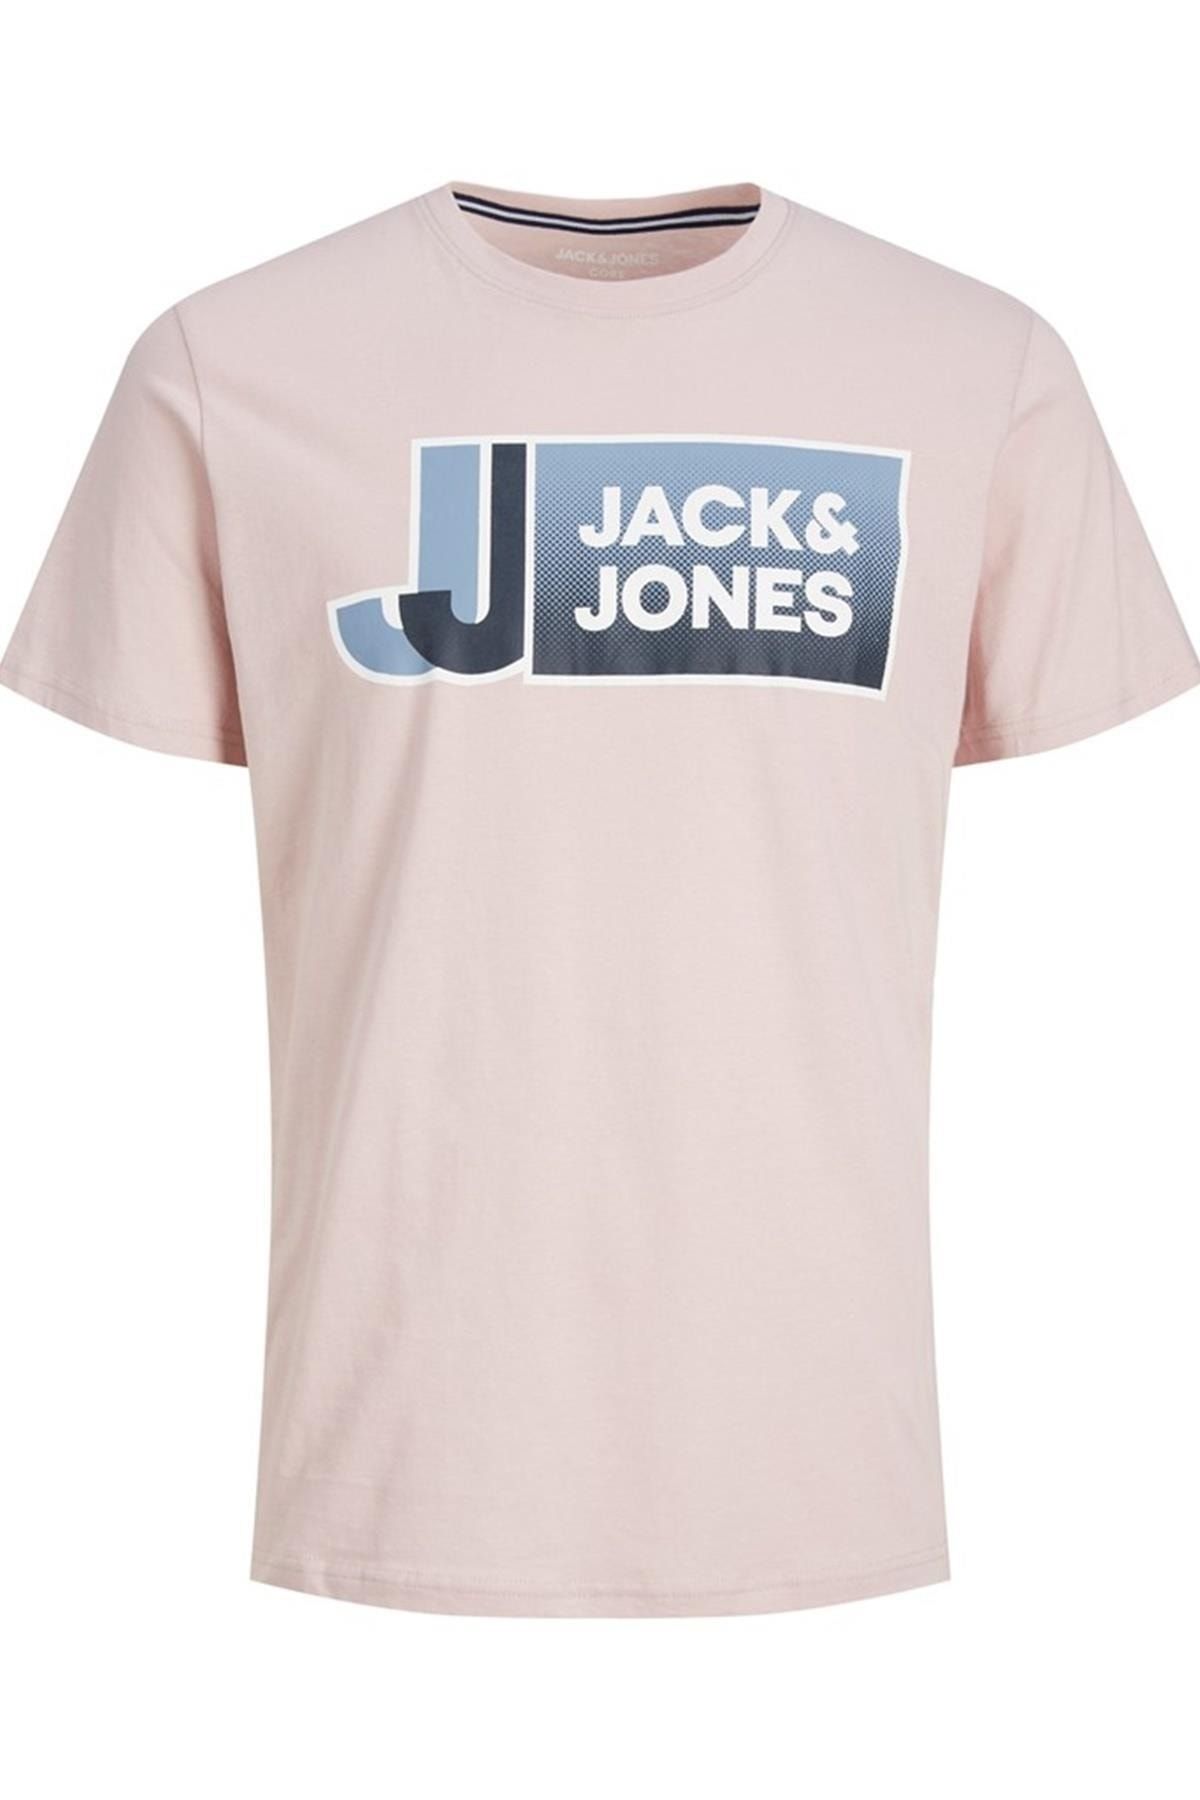 Jack & Jones Jack&jones Jcologan Tee Ss Crew Neck Ss23 Sn